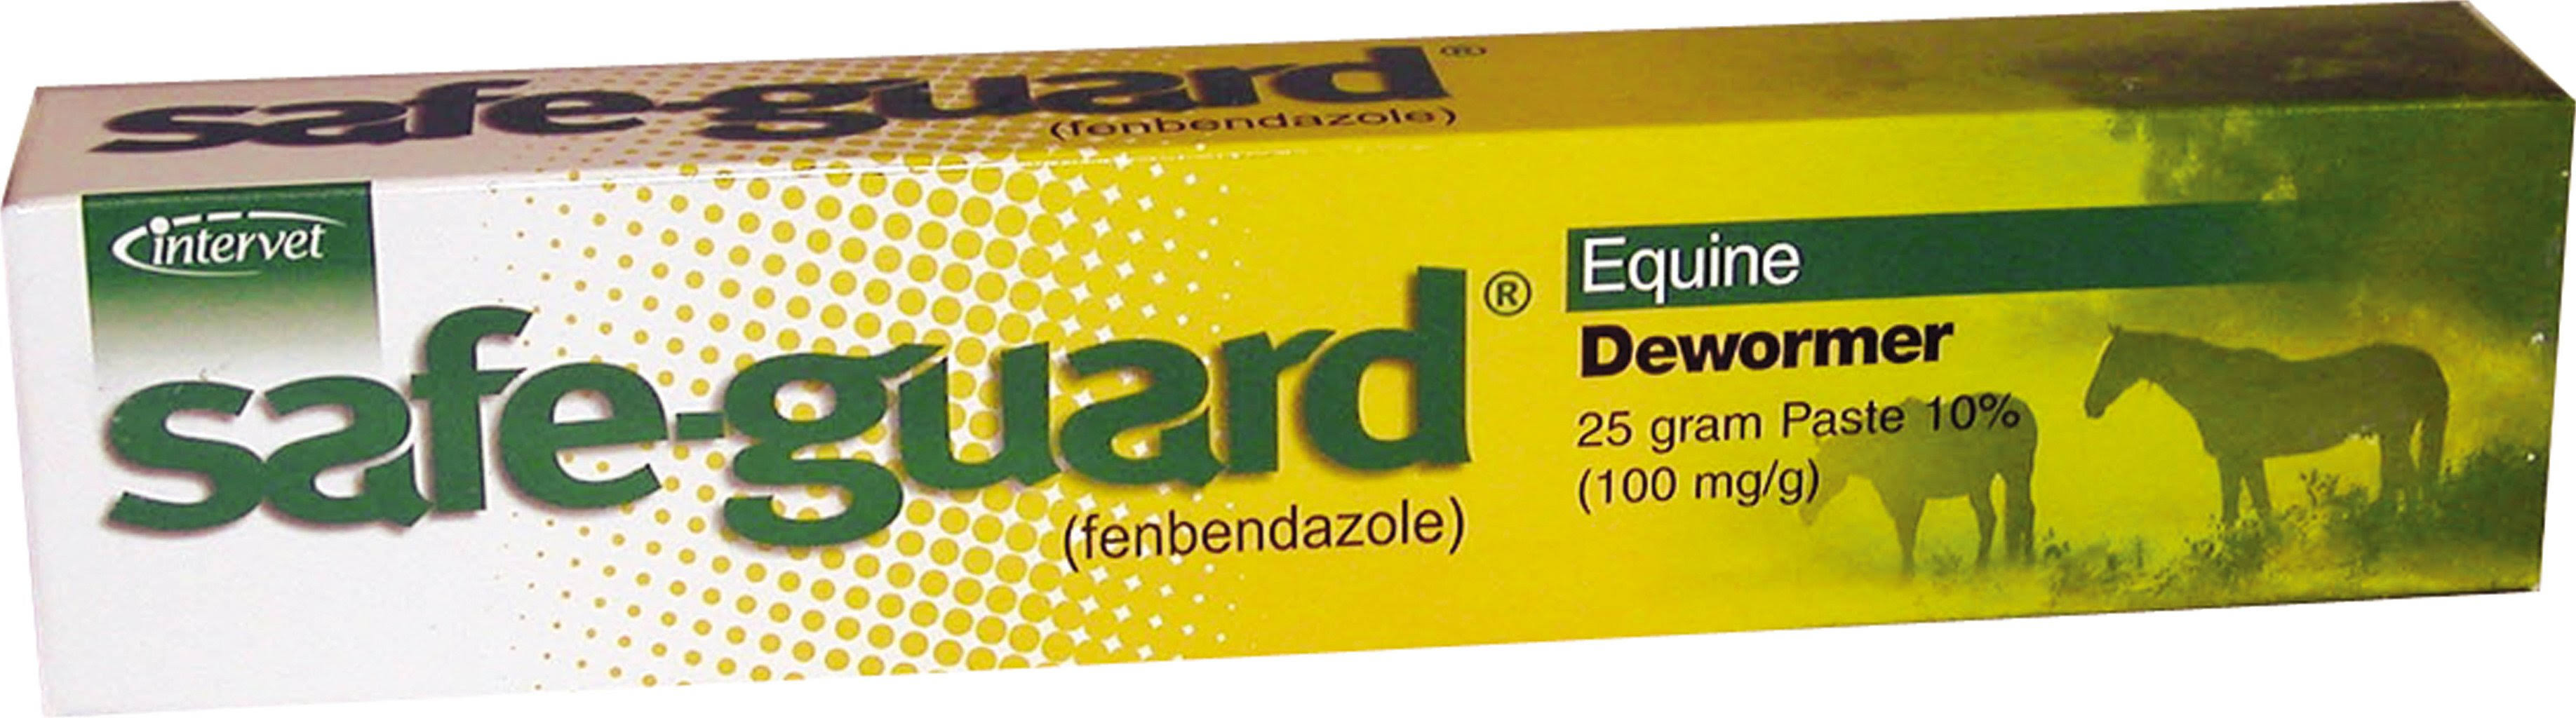 Merck Safe-Guard Equine Dewormer Paste - 25g